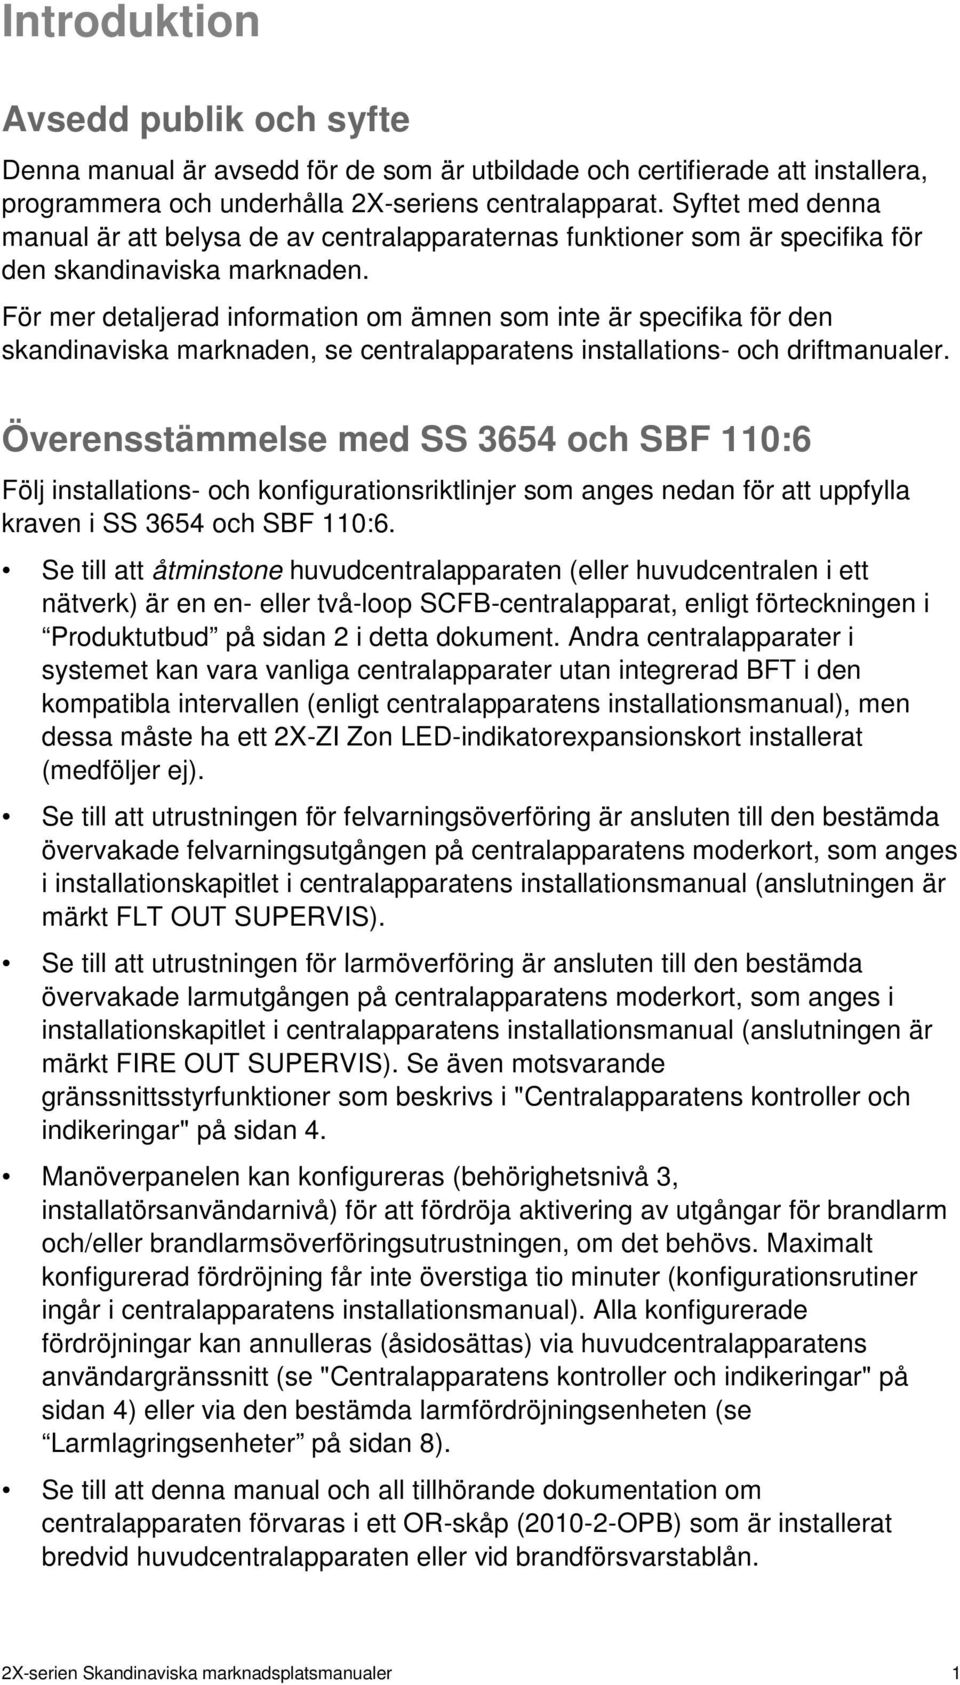 För mer detaljerad information om ämnen som inte är specifika för den skandinaviska marknaden, se centralapparatens installations- och driftmanualer.